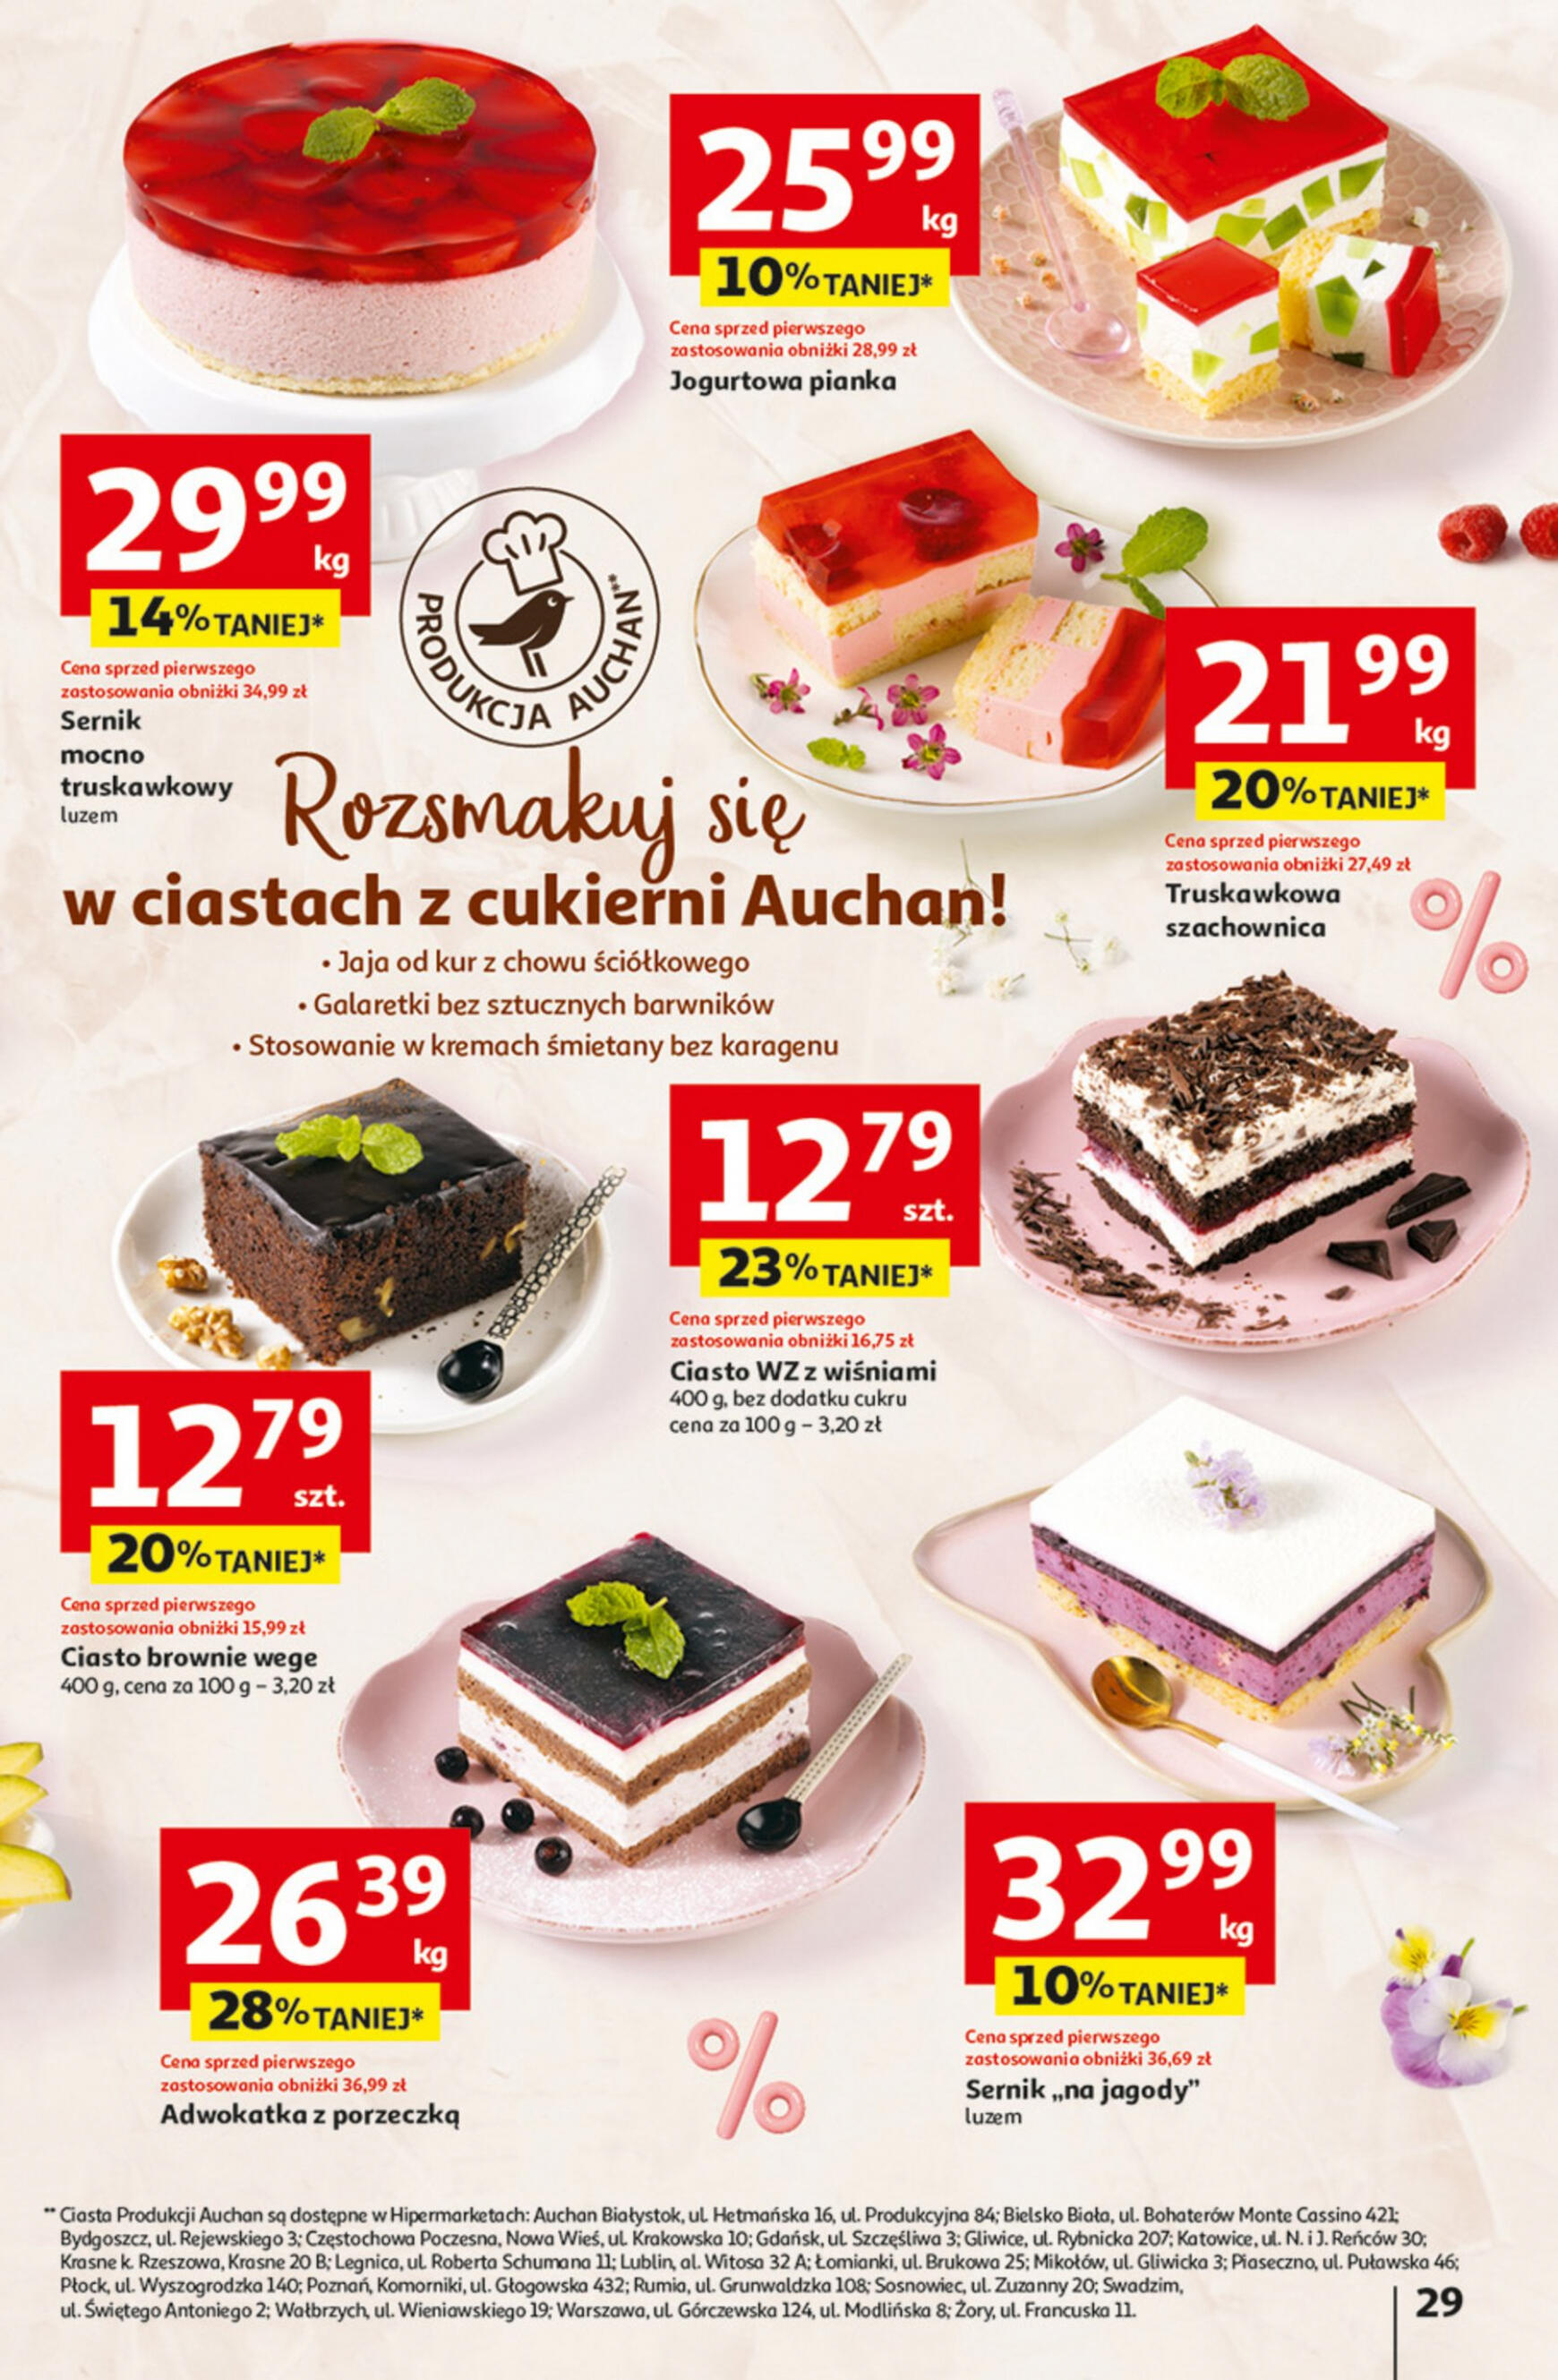 auchan - Hipermarket Auchan - Gazetka Jeszcze taniej na urodziny gazetka aktualna ważna od 09.05. - 15.05. - page: 29